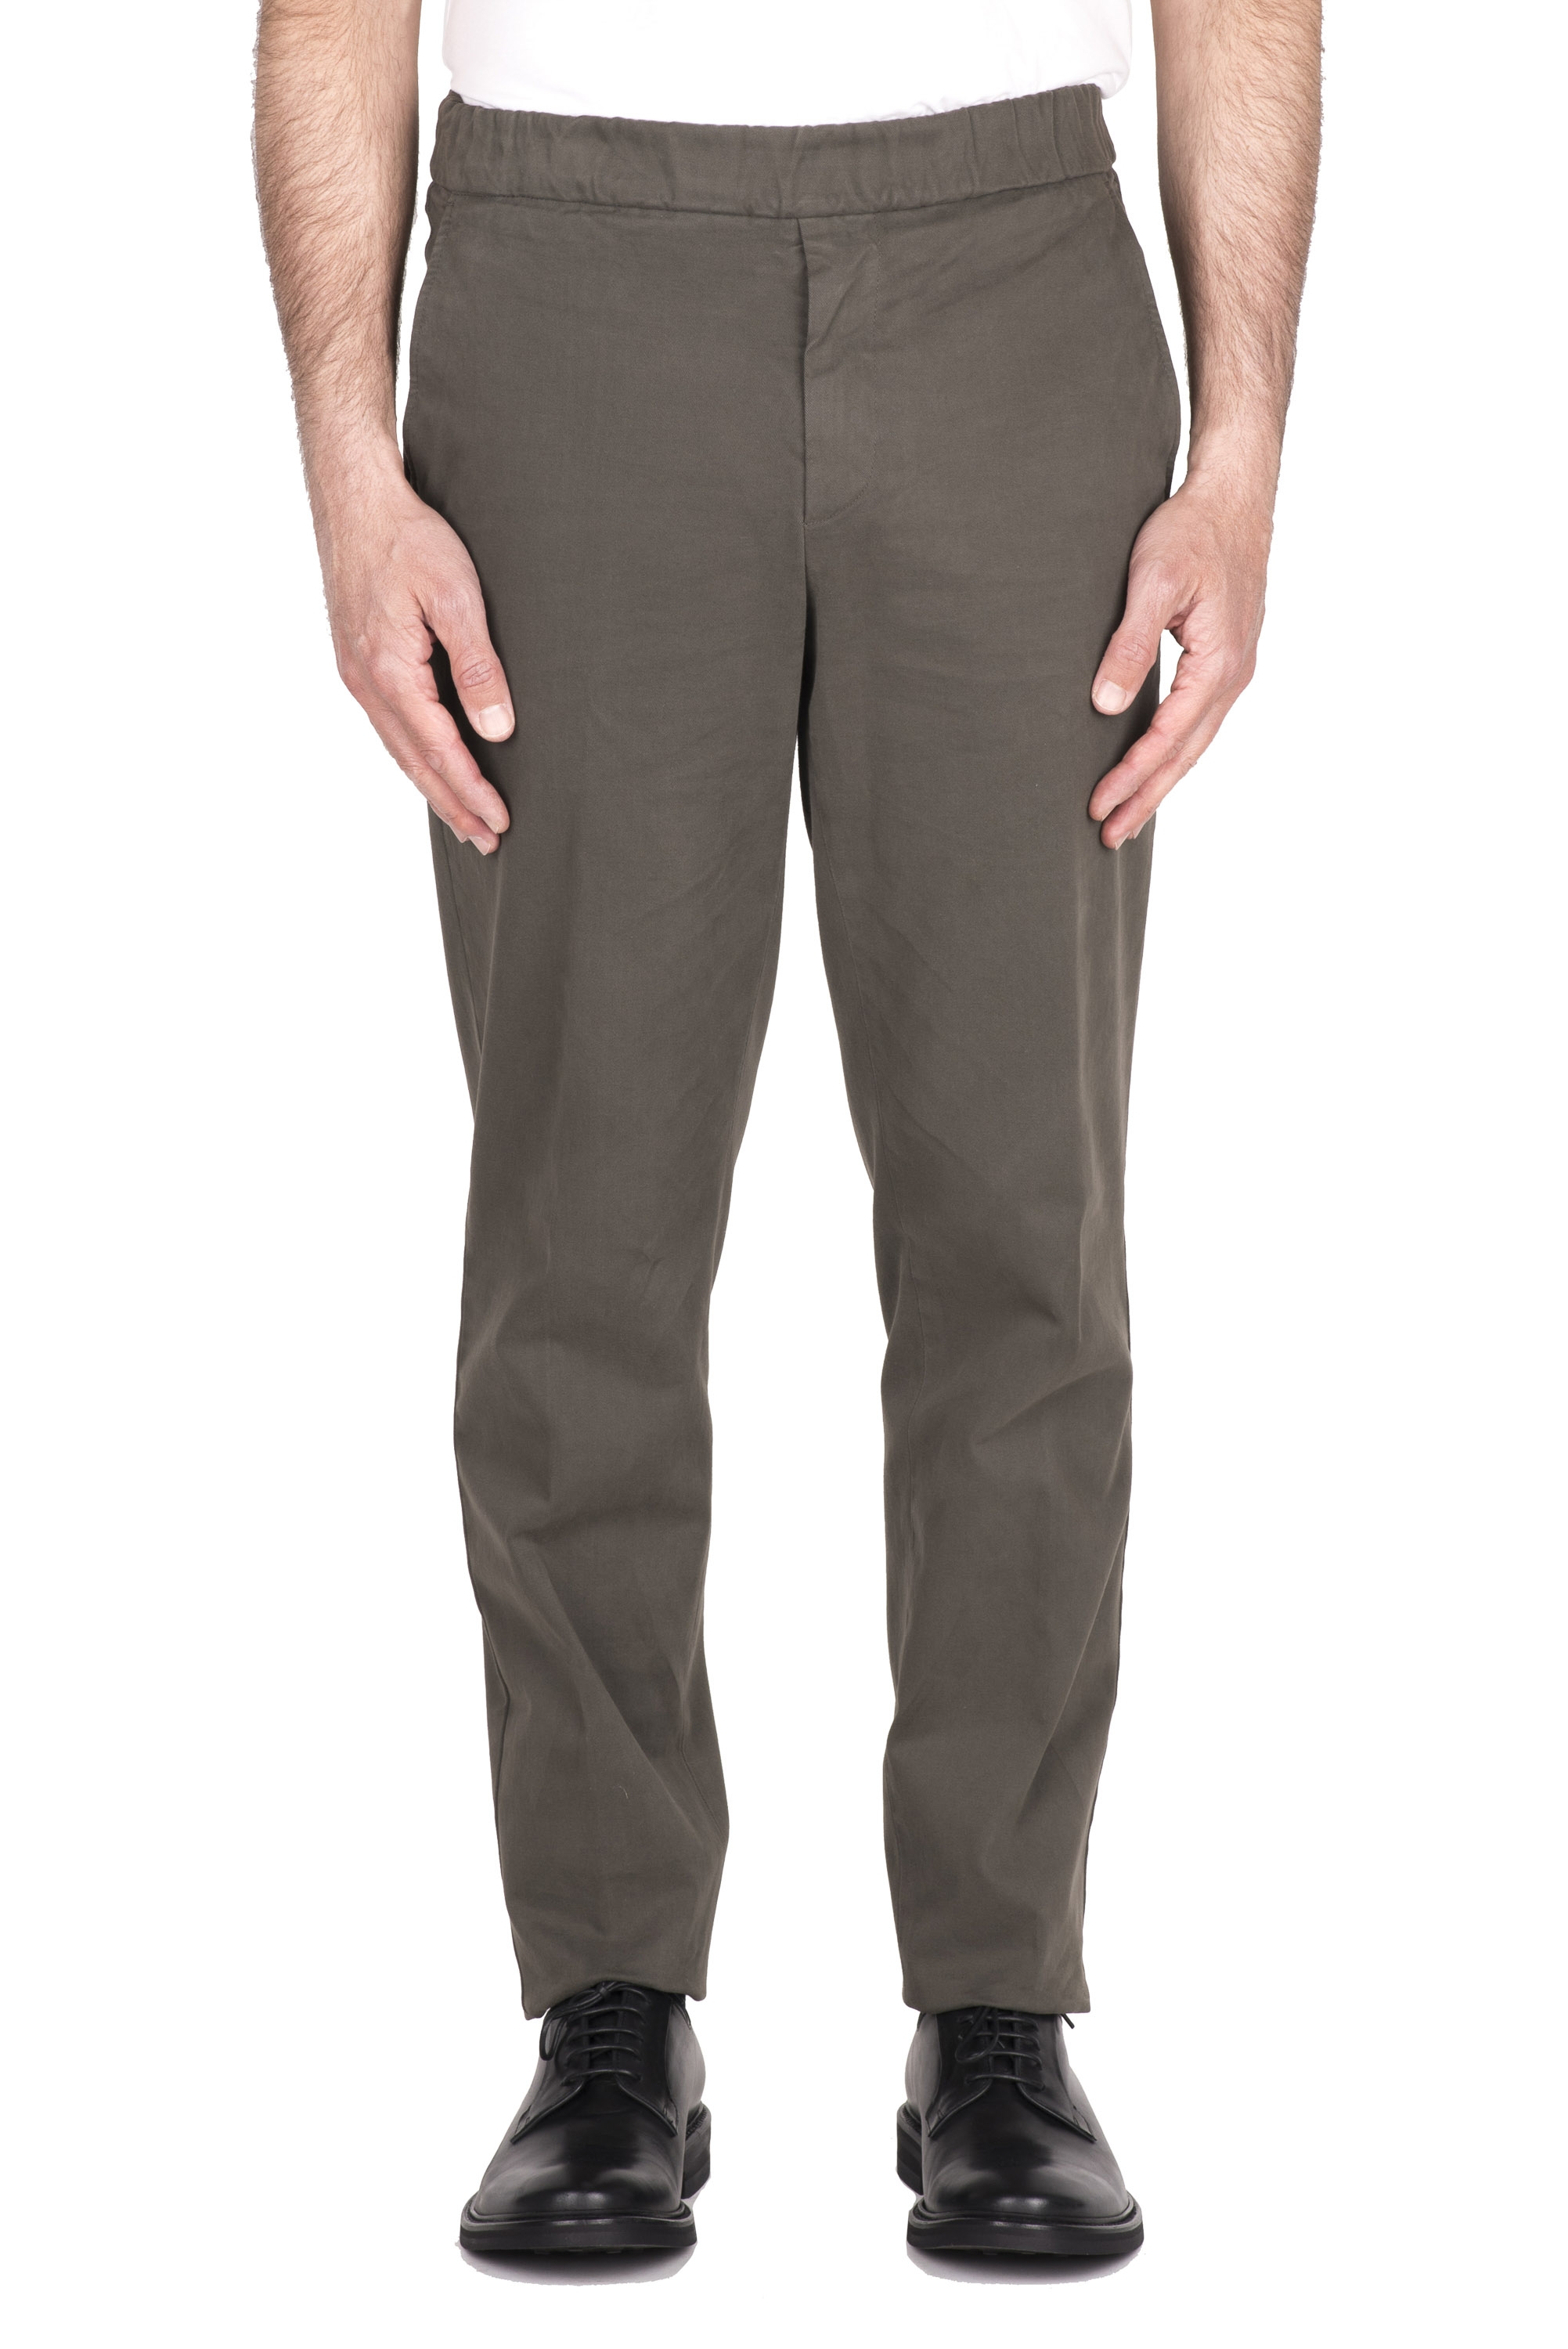 SBU 03439_2021AW Pantaloni comfort in cotone elasticizzato marrone 01